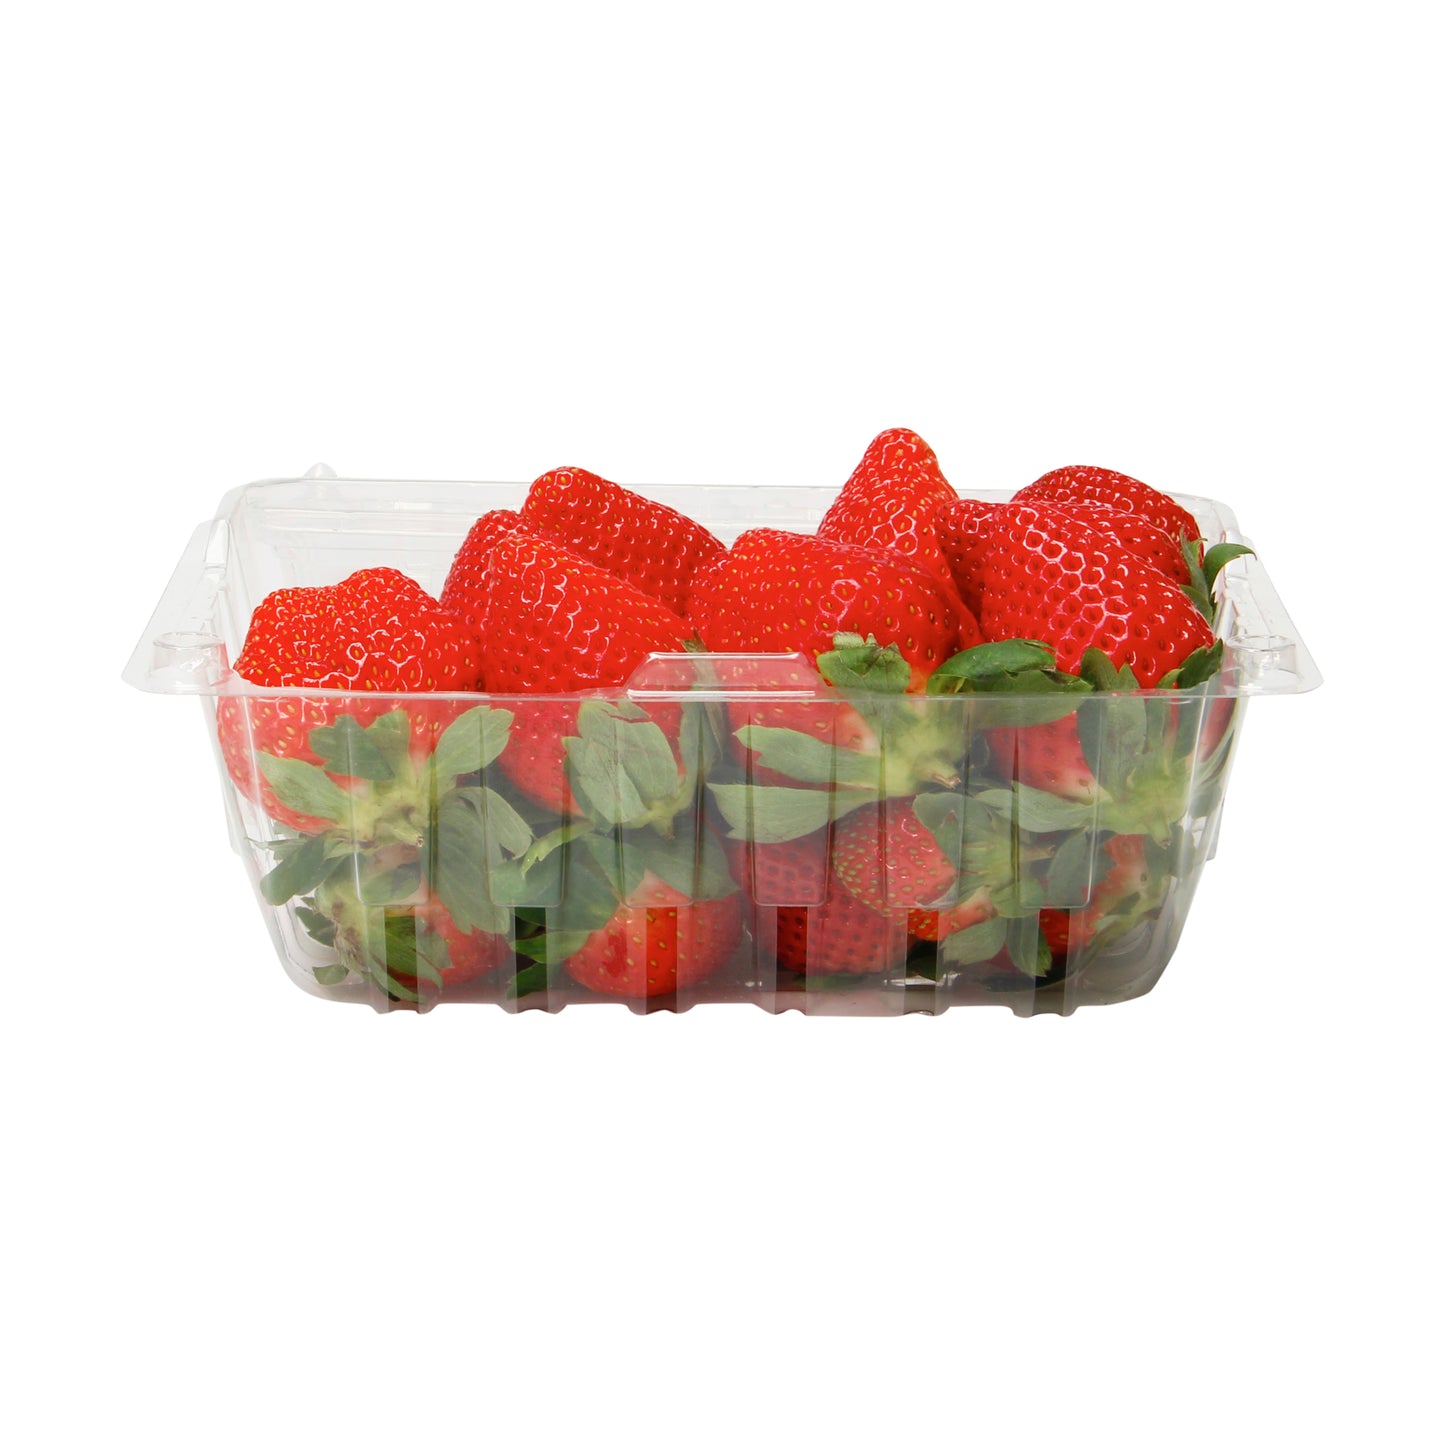 Berries, Strawberries 1#